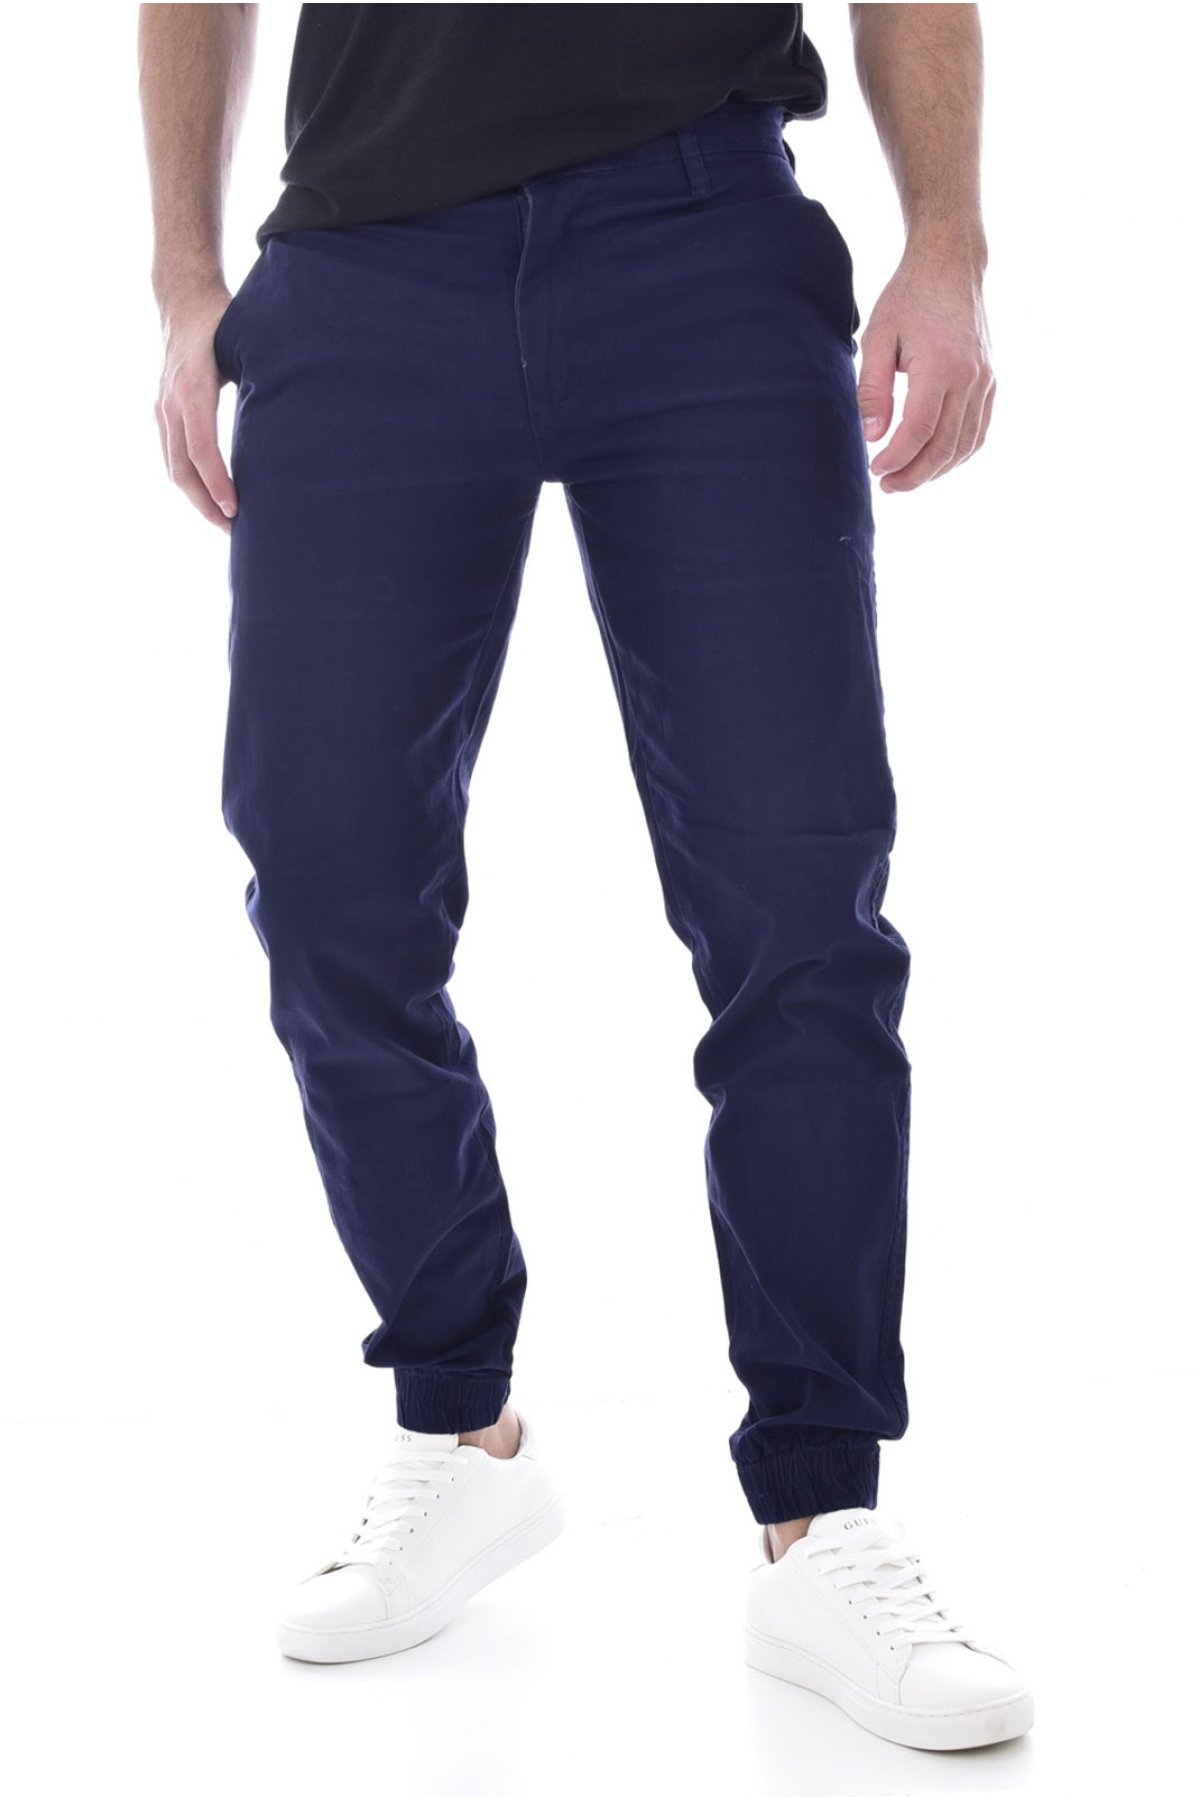 Giani 5 D187 kalhoty modré